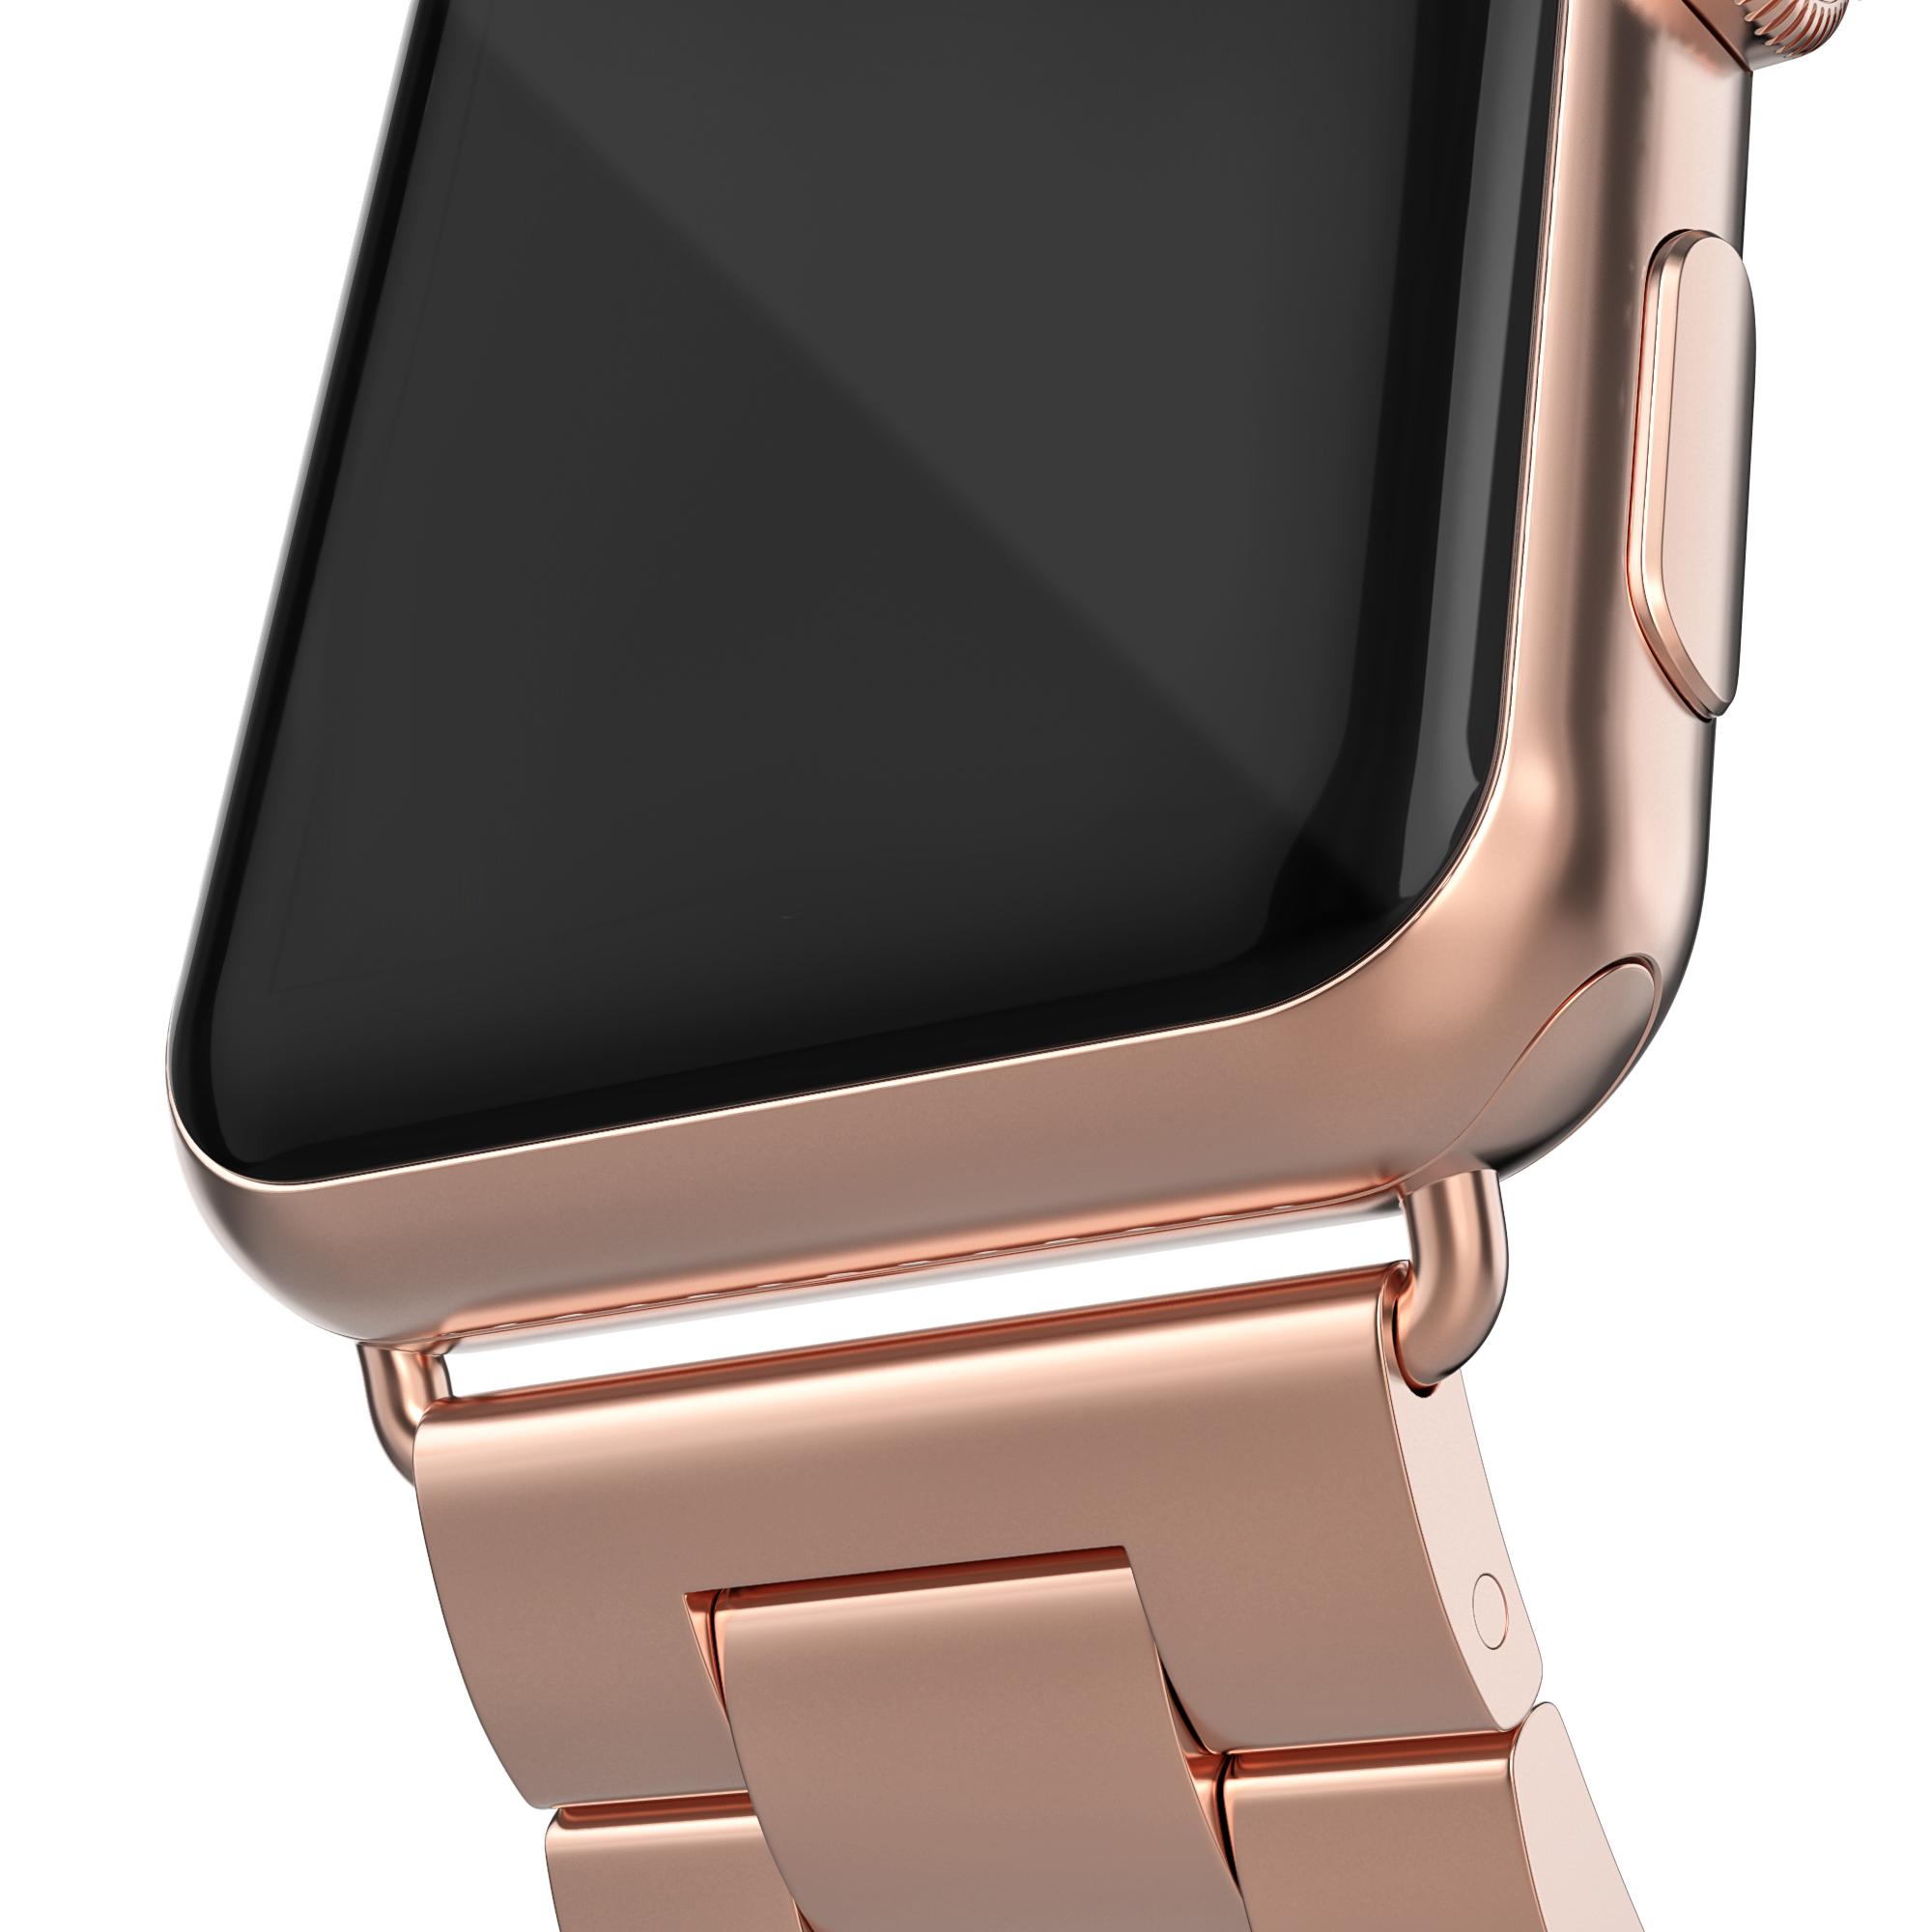 Correa de acero Apple Watch SE 40mm oro rosa